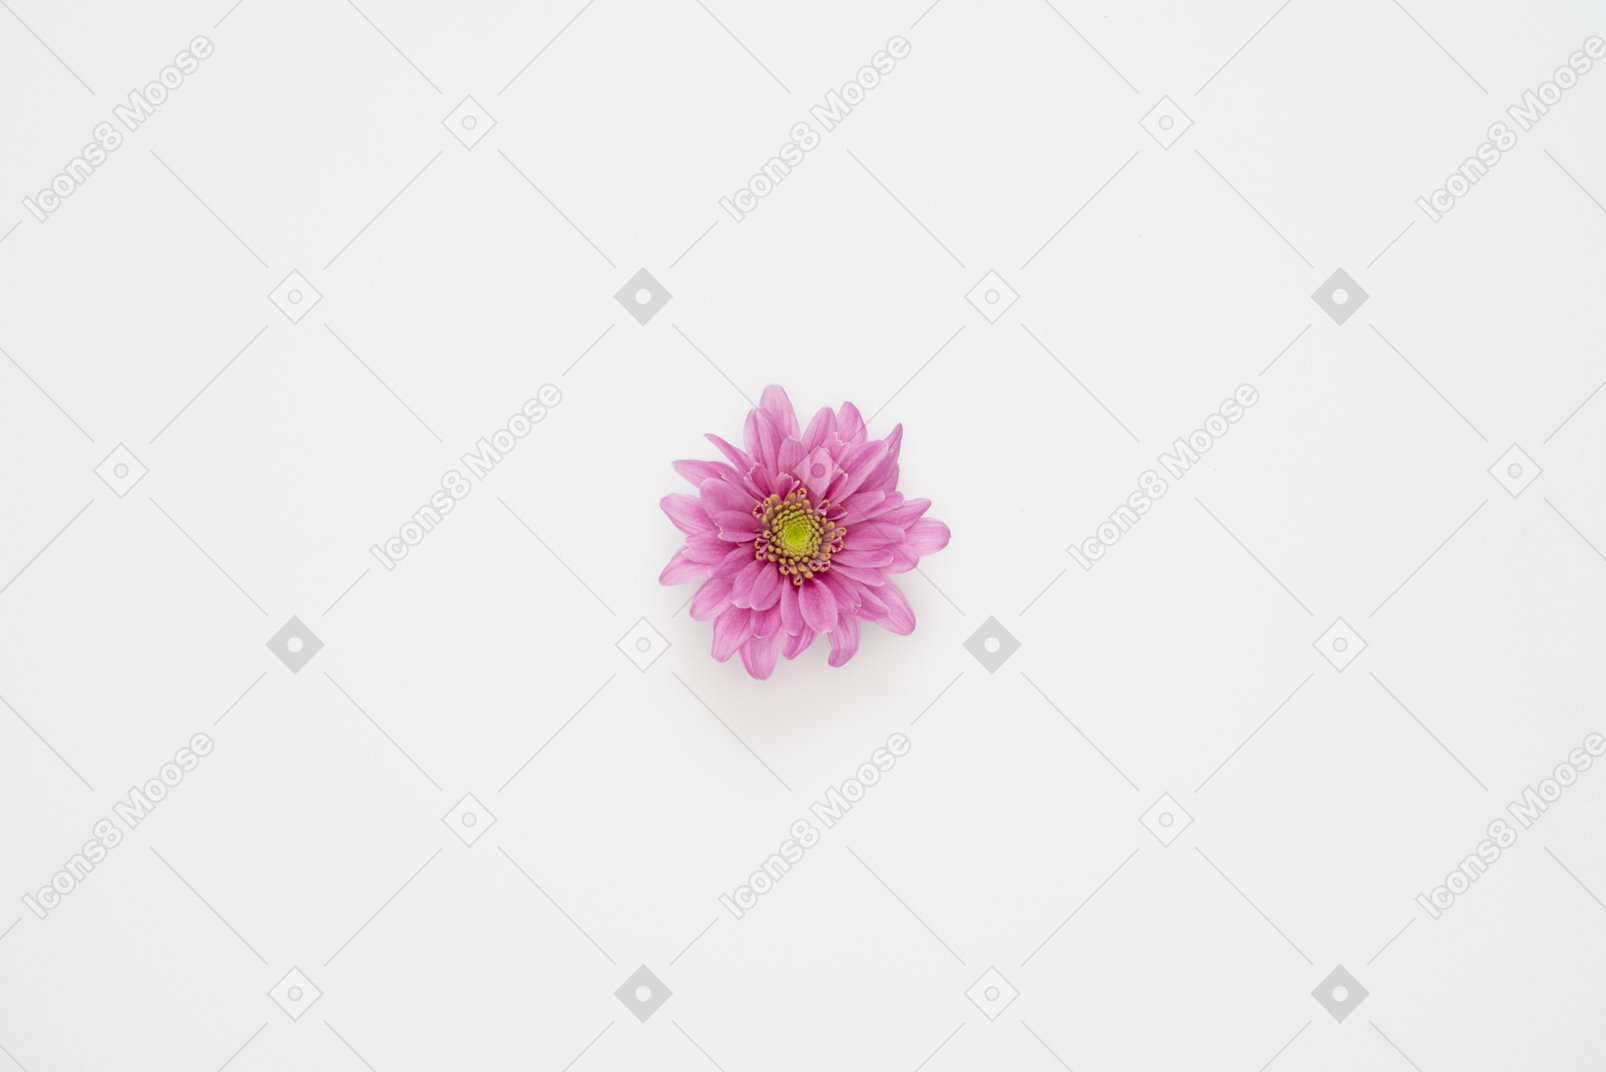 Cabeça de flor